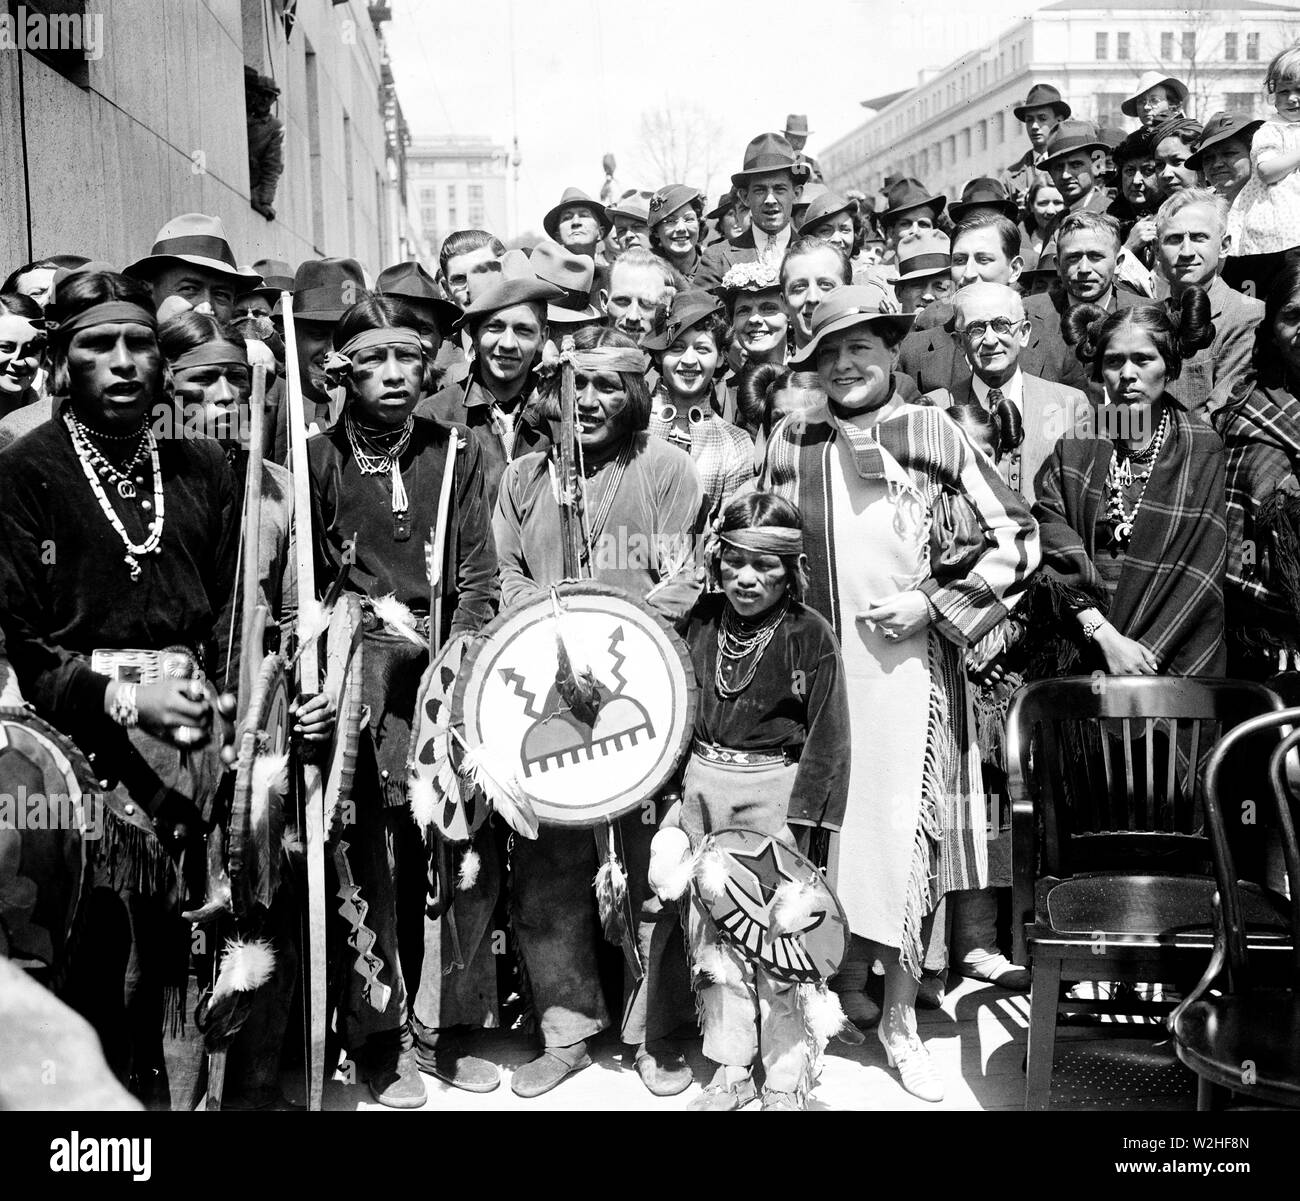 Rencontre avec les Indiens d'Amérique, Washington, D.C. / Rencontre avec les Indiens américains dans les années 1930 ca. 1936 Banque D'Images